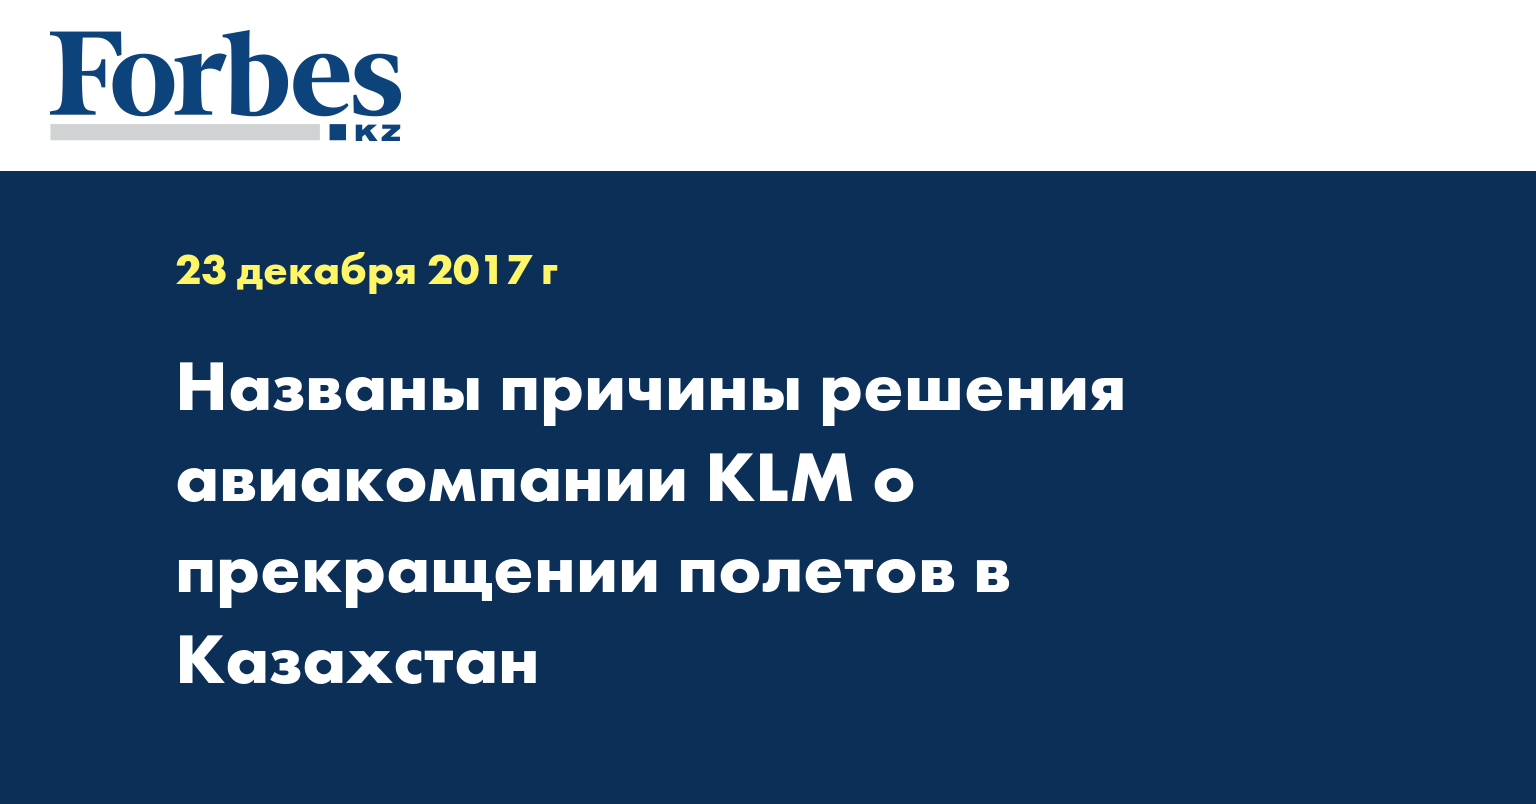 Названы причины решения авиакомпании KLM о прекращении полетов в Казахстан 